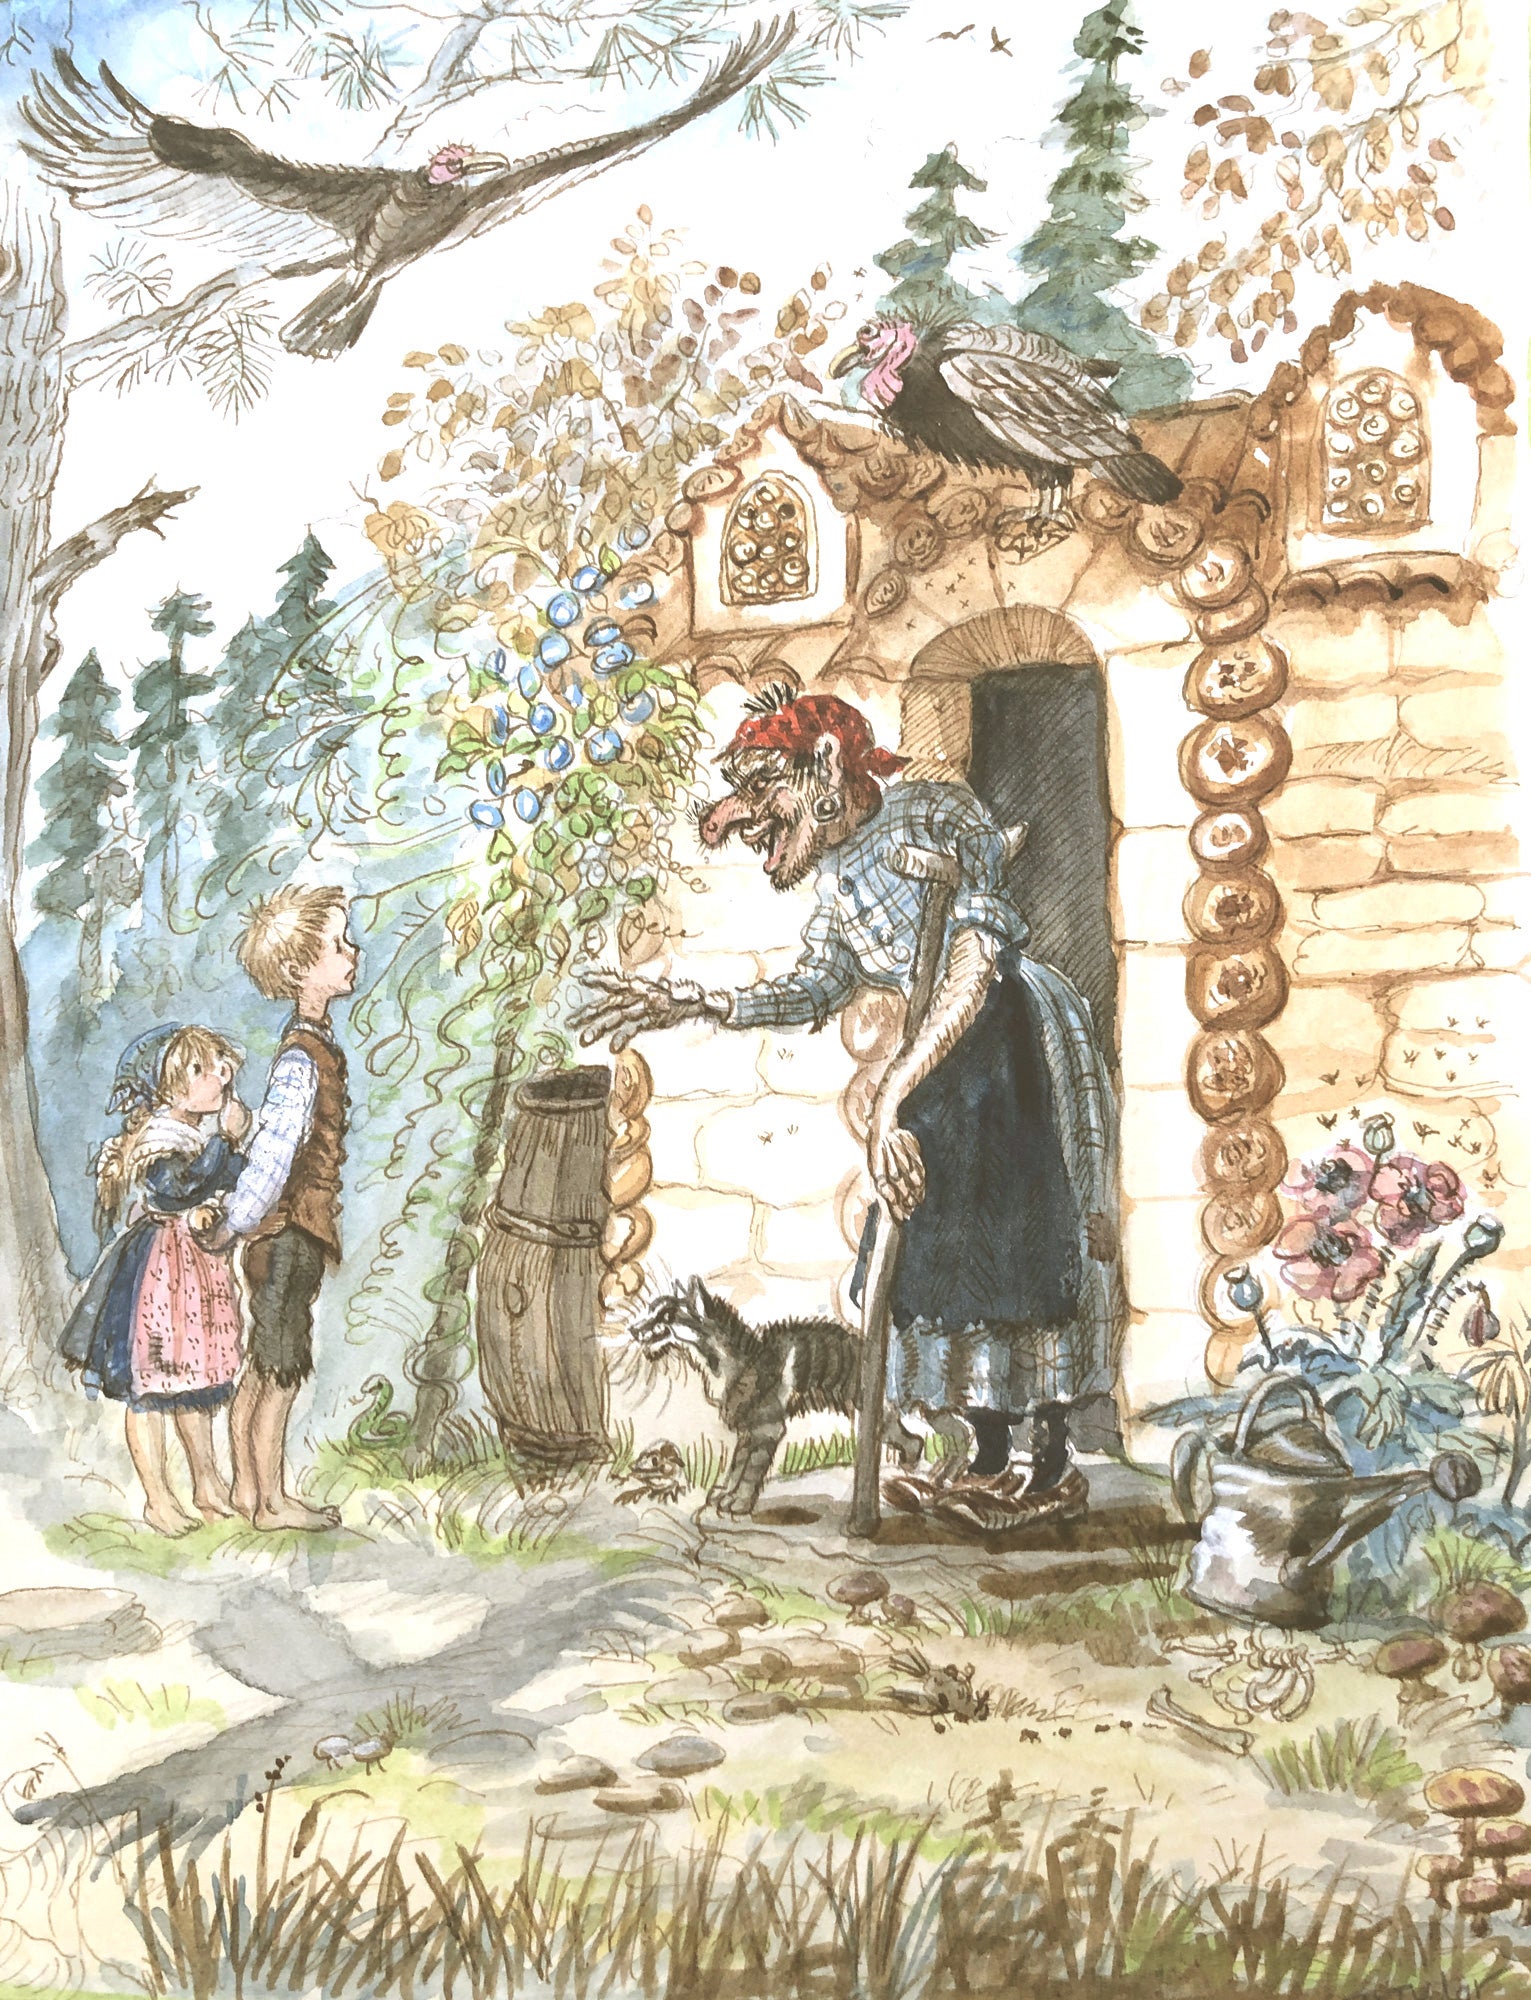 Hansel and Gretel  Bedtime Stories for Kids 